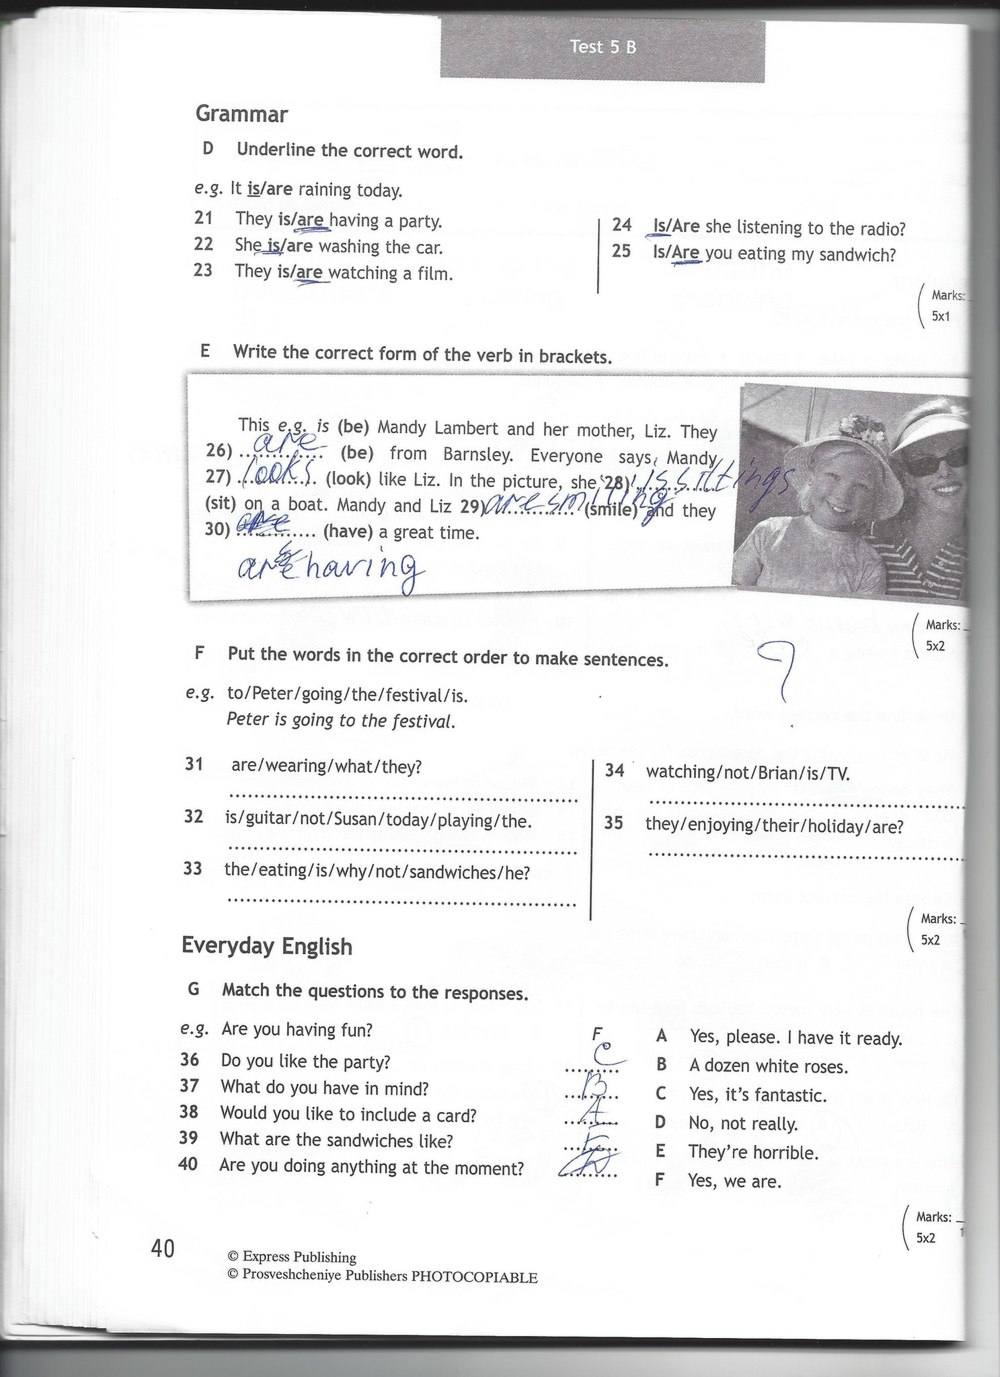 Тест бук 6 класс ответы. Английский язык 5 класс тест буклет Spotlight 6 а. Английский язык 6 класс тест бук Spotlight 5b. 6 Класс английский язык Spotlight 6 модуль. Английский 6 класс ваулина кр 6 модуль.